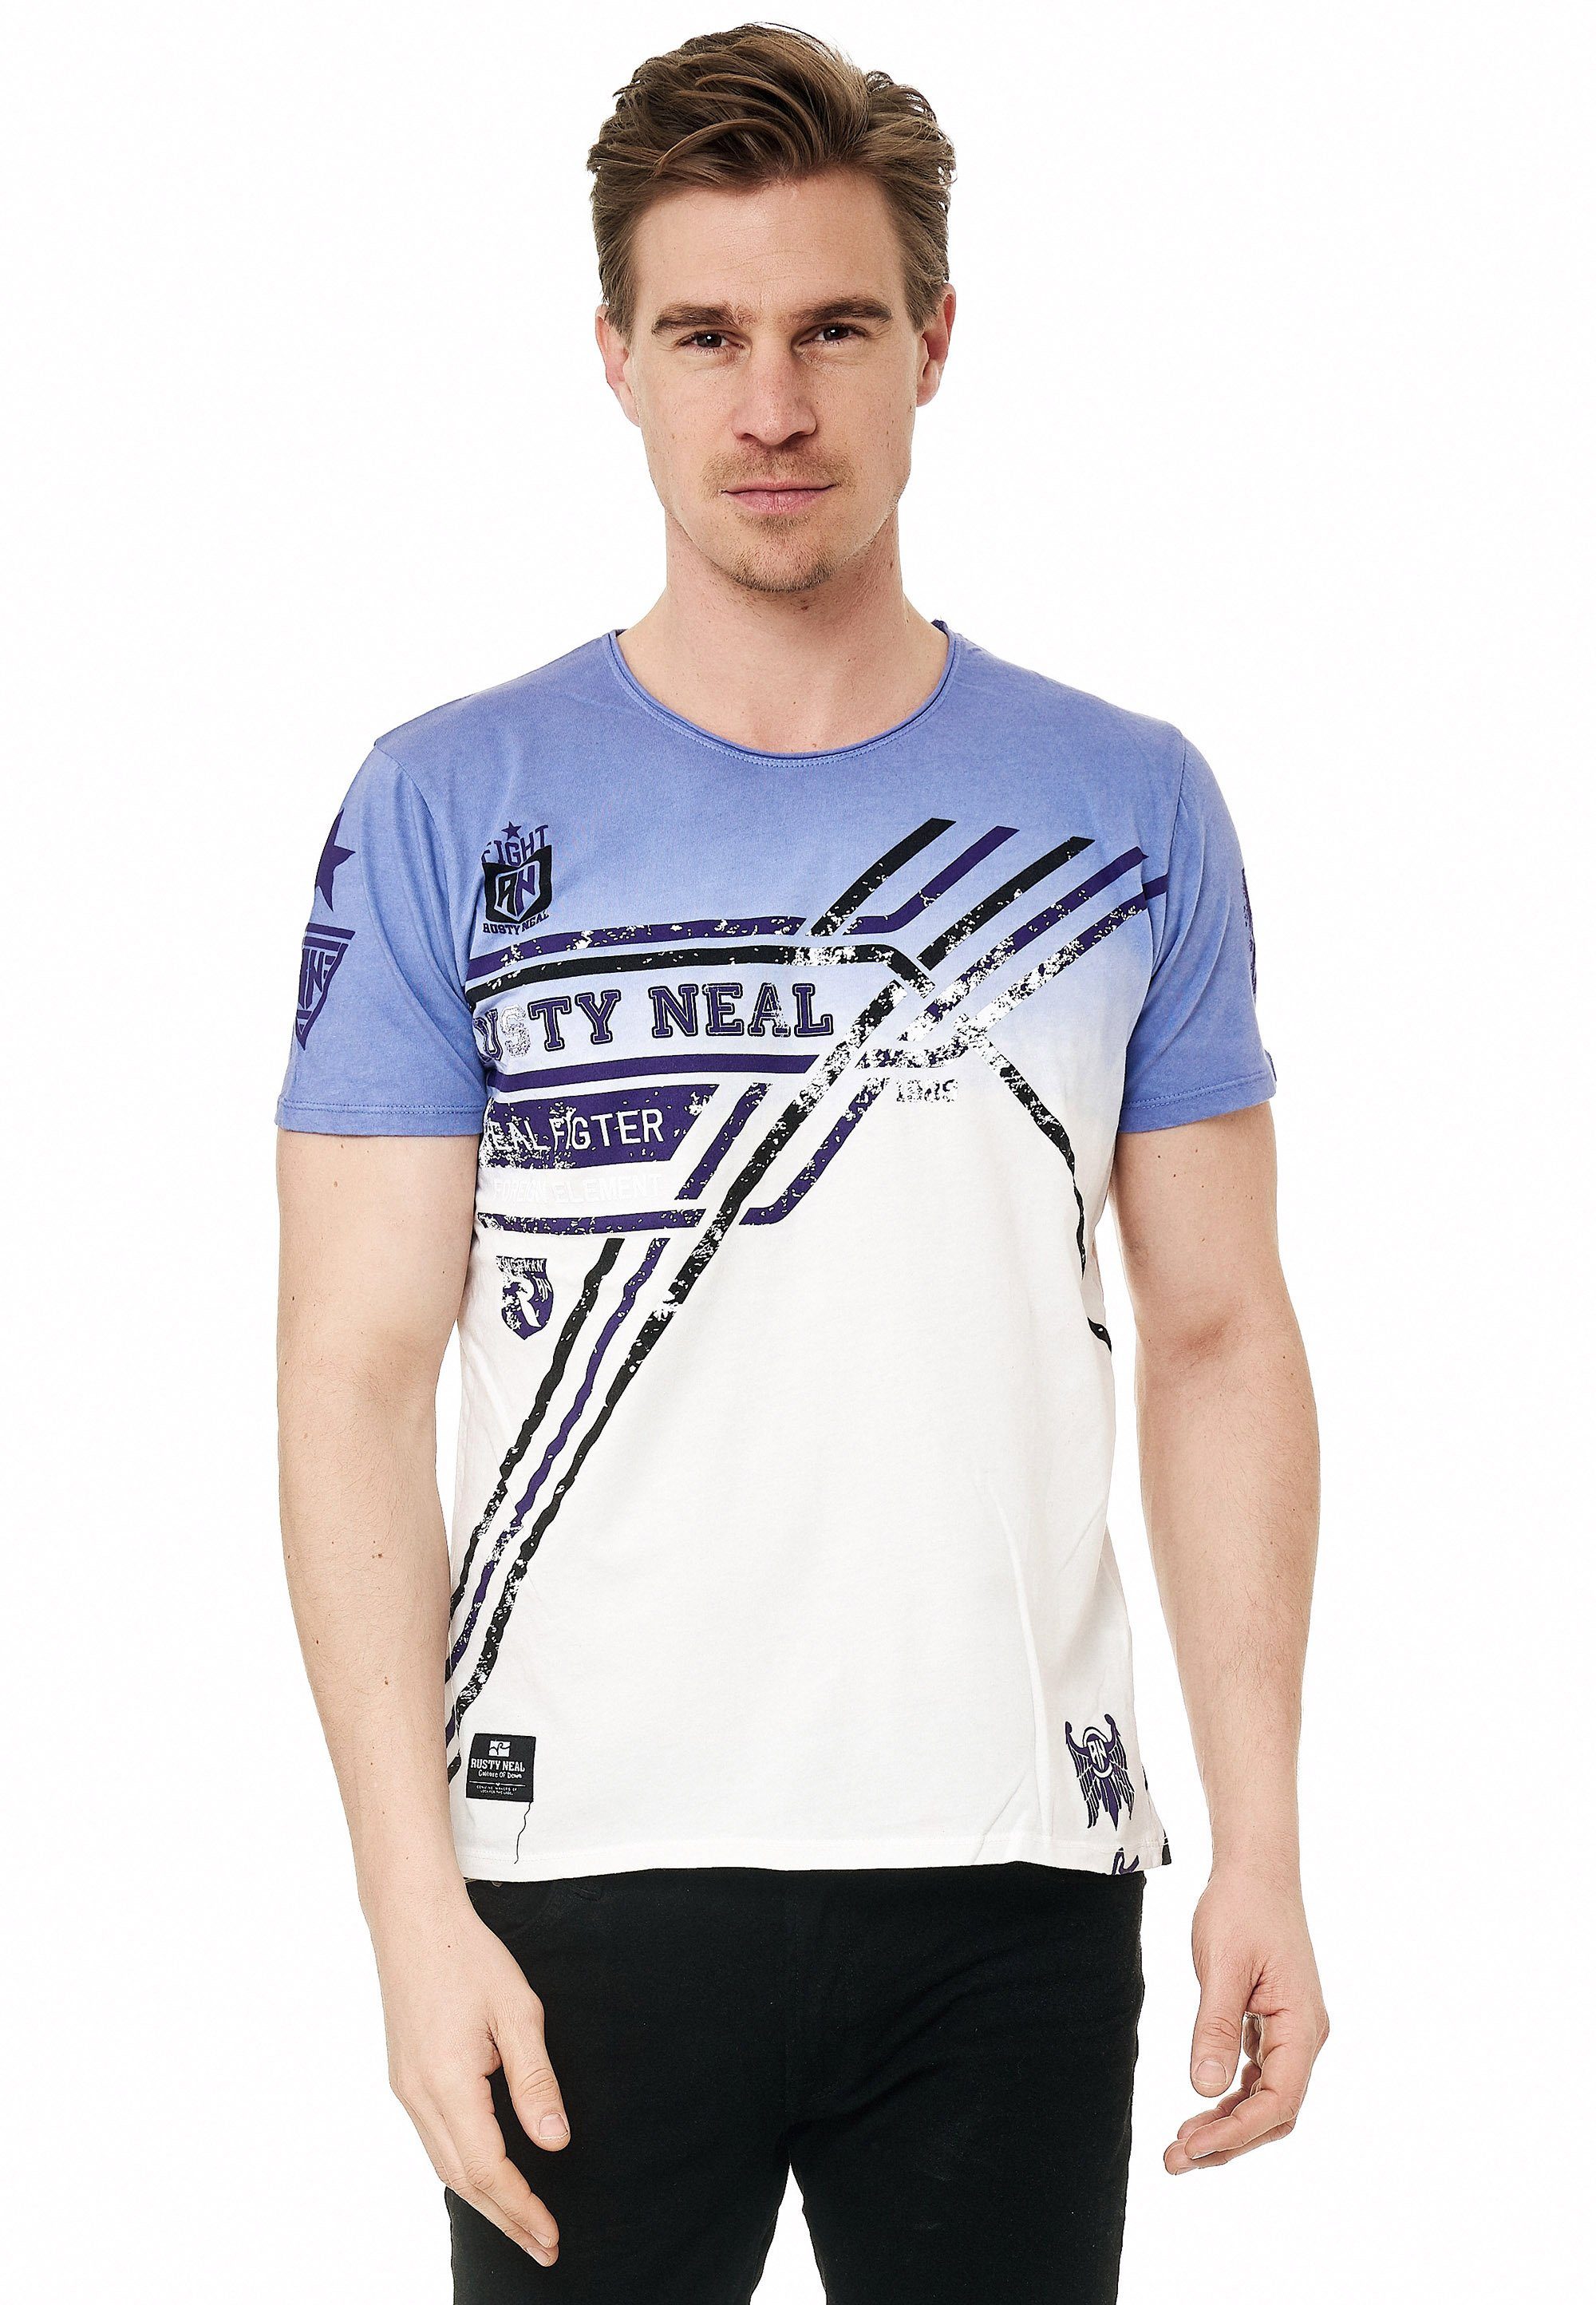 und Neal Freizeit Sportlich-legerer mit für Stil T-Shirt Print, Alltag Rusty modernem